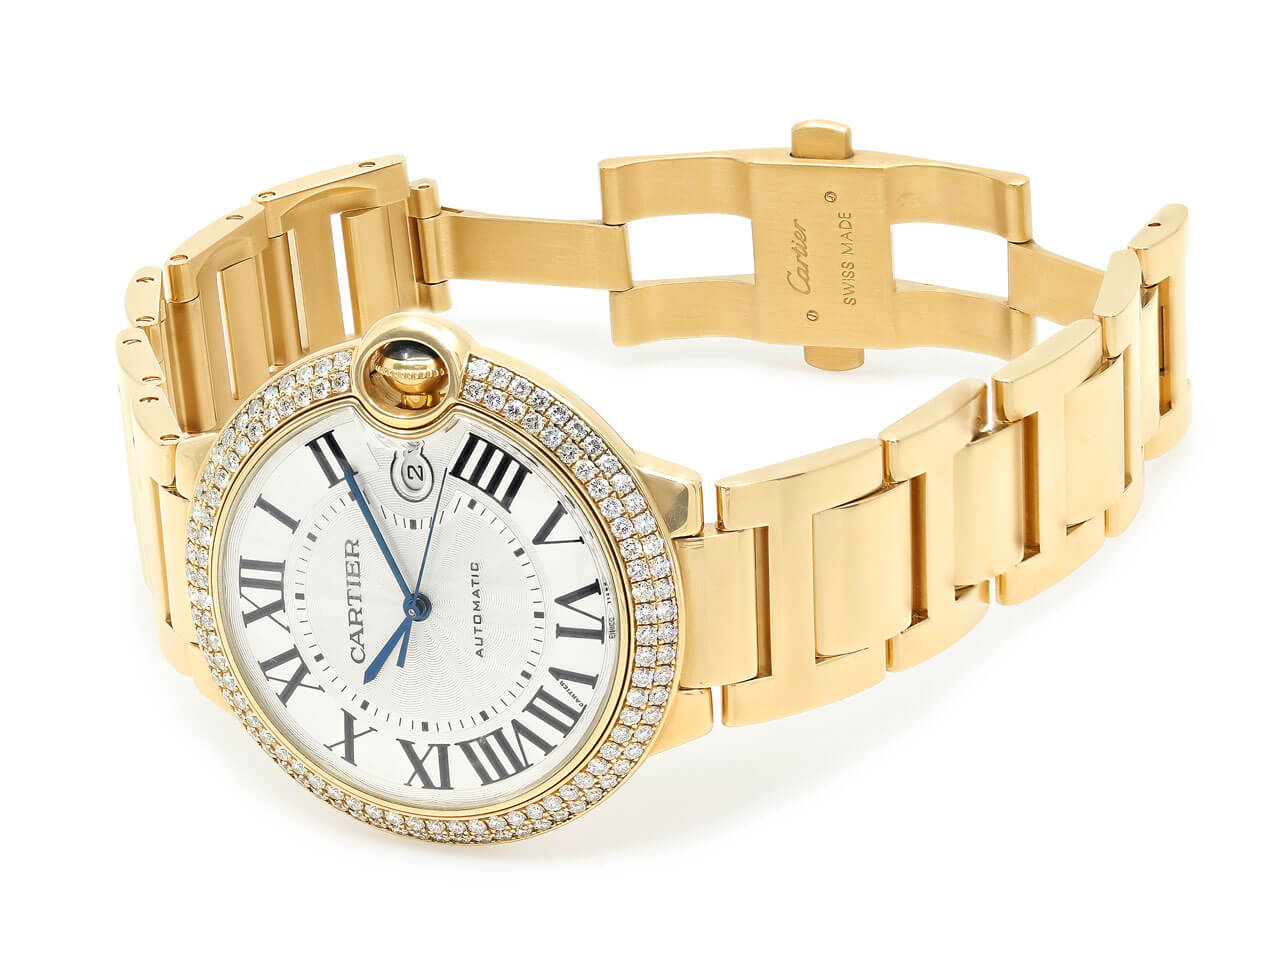 Cartier 'Ballon Bleu' Diamond Watch in 18K Yellow Gold, 42mm